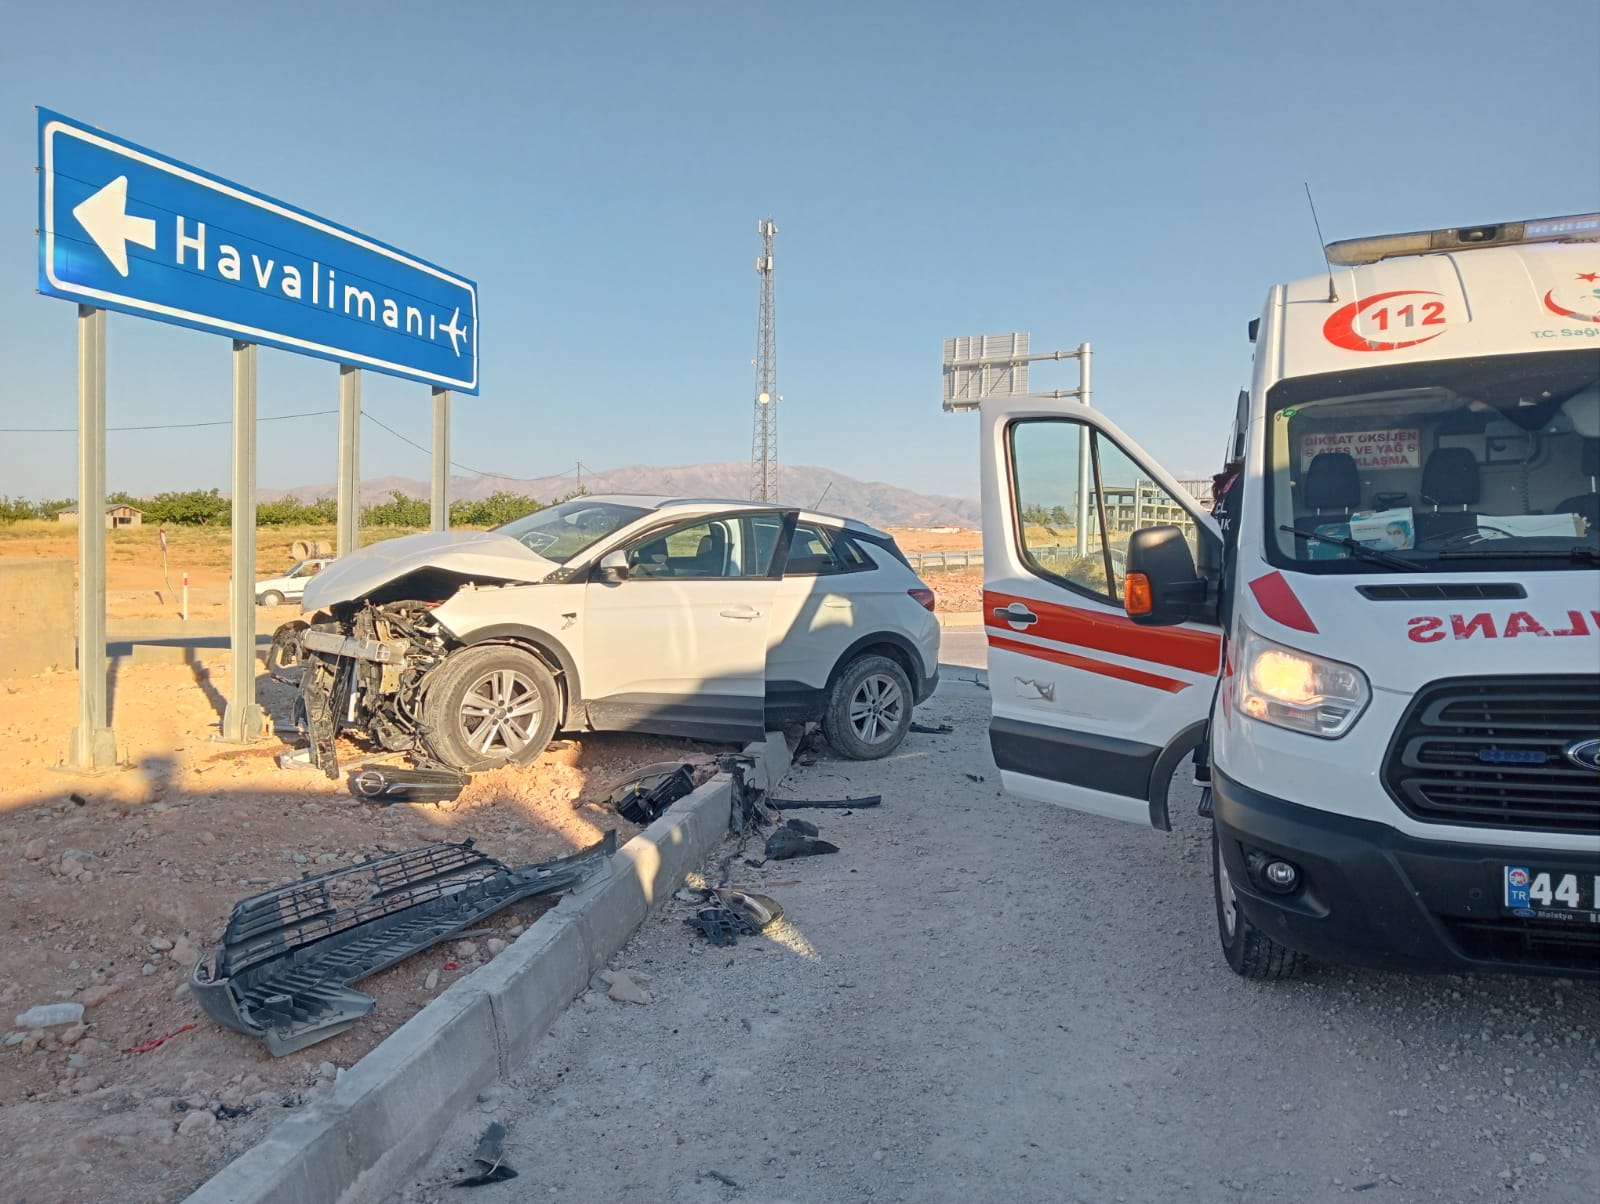 Havalimanı yolunda ve Karahan Tüneli içerisinde meydana gelen iki ayrı trafik kazasında iki kişi yaralandı, araçlar hasar gördü.